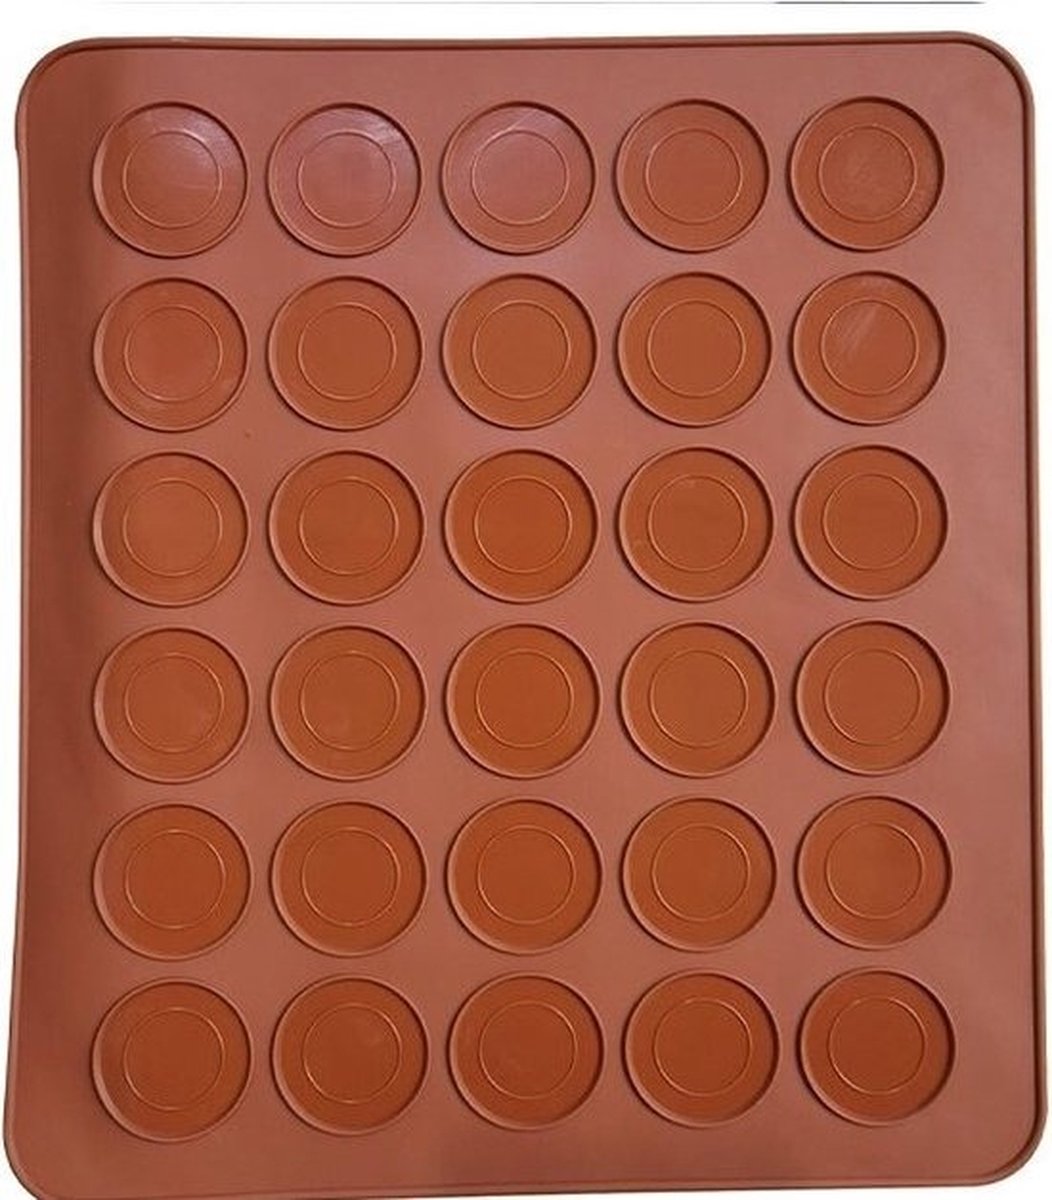 LBB - Macarons bakmat - Voor 30 stuks - Macaron - Set - Vaatwasserbestendig - Ovenbestendig - Macarons mat